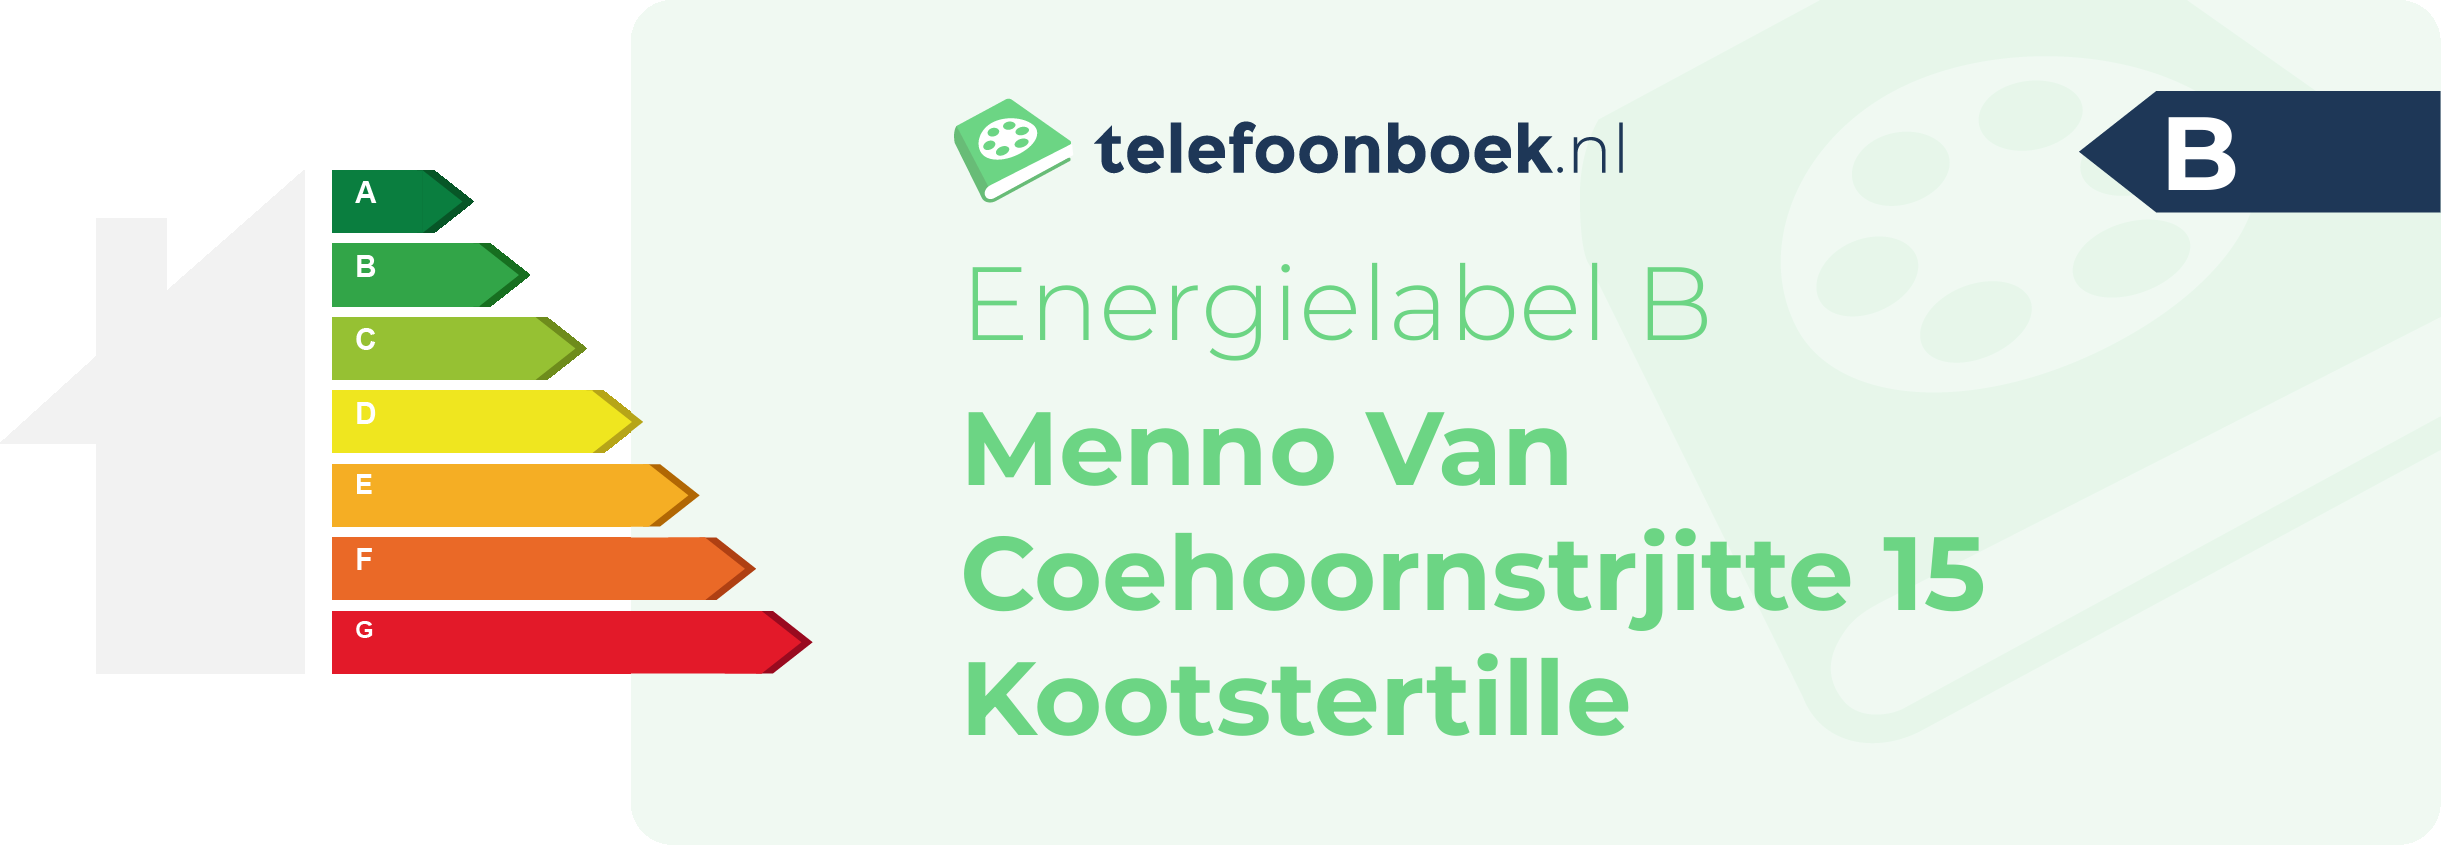 Energielabel Menno Van Coehoornstrjitte 15 Kootstertille